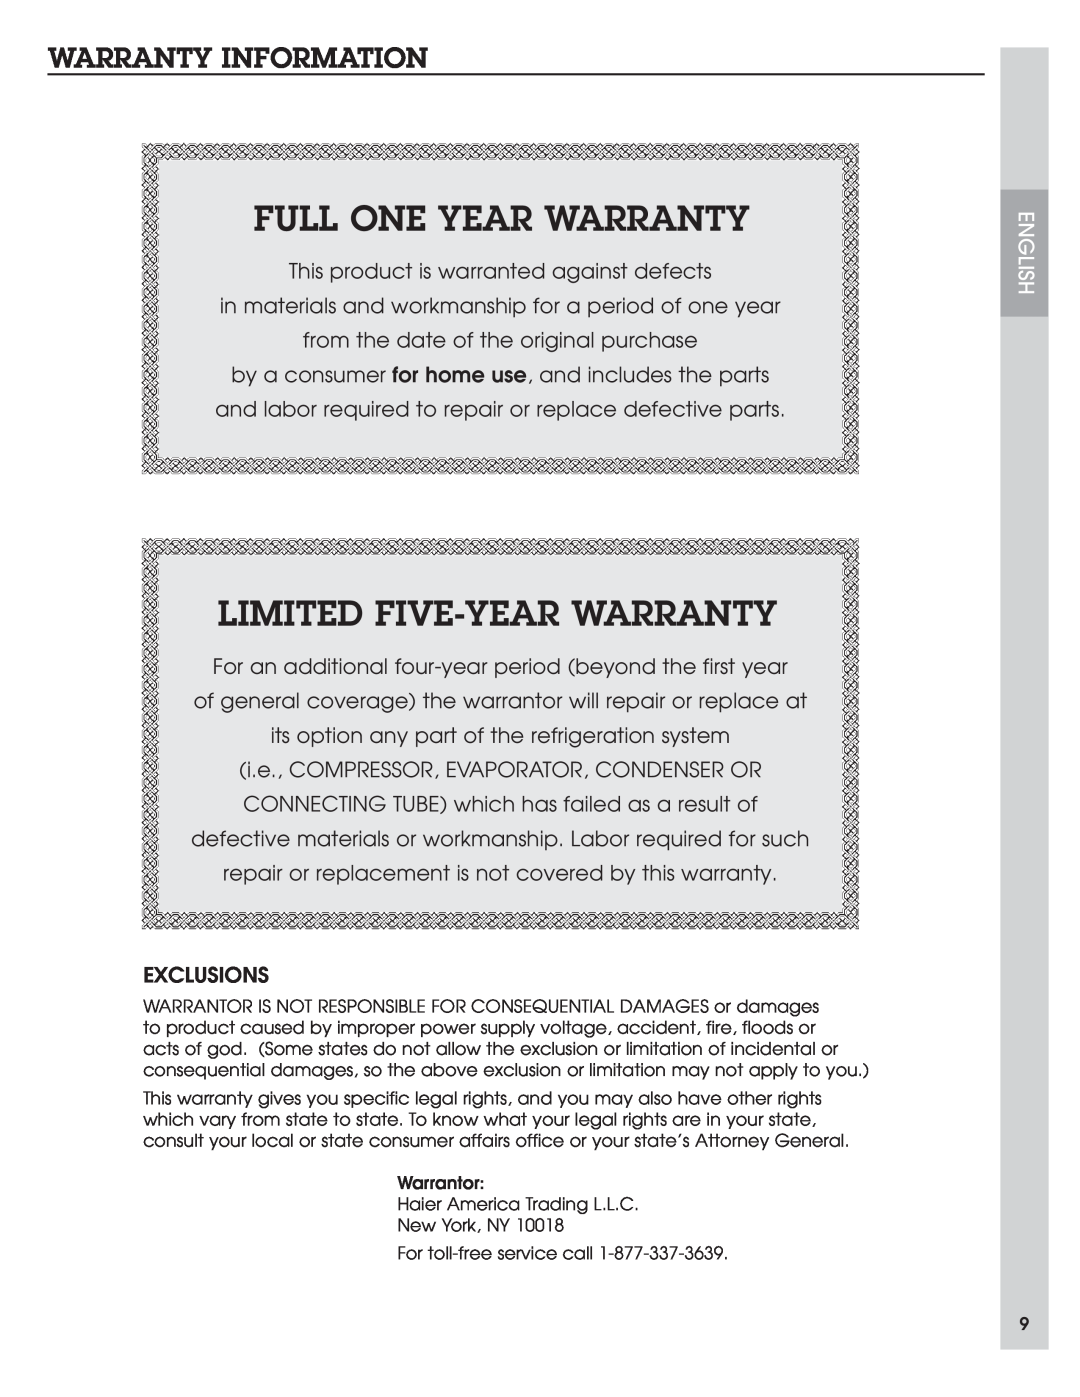 Haier DE45EJ-T, DE45EJ-L, DE65EJ-L manual Full One Year Warranty, Limited Five-Yearwarranty, Warranty Information, English 